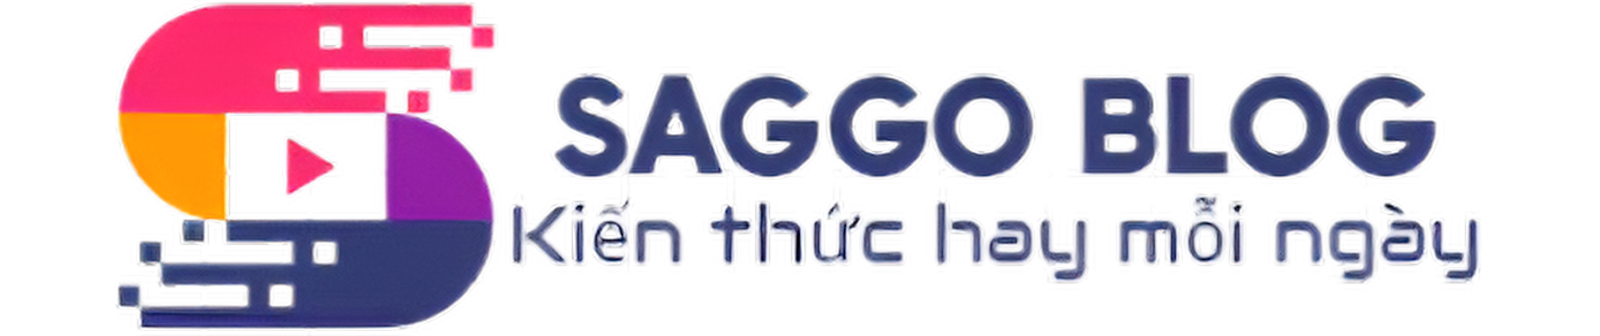 Saggo Blog | Kiến thức hay mỗi ngày